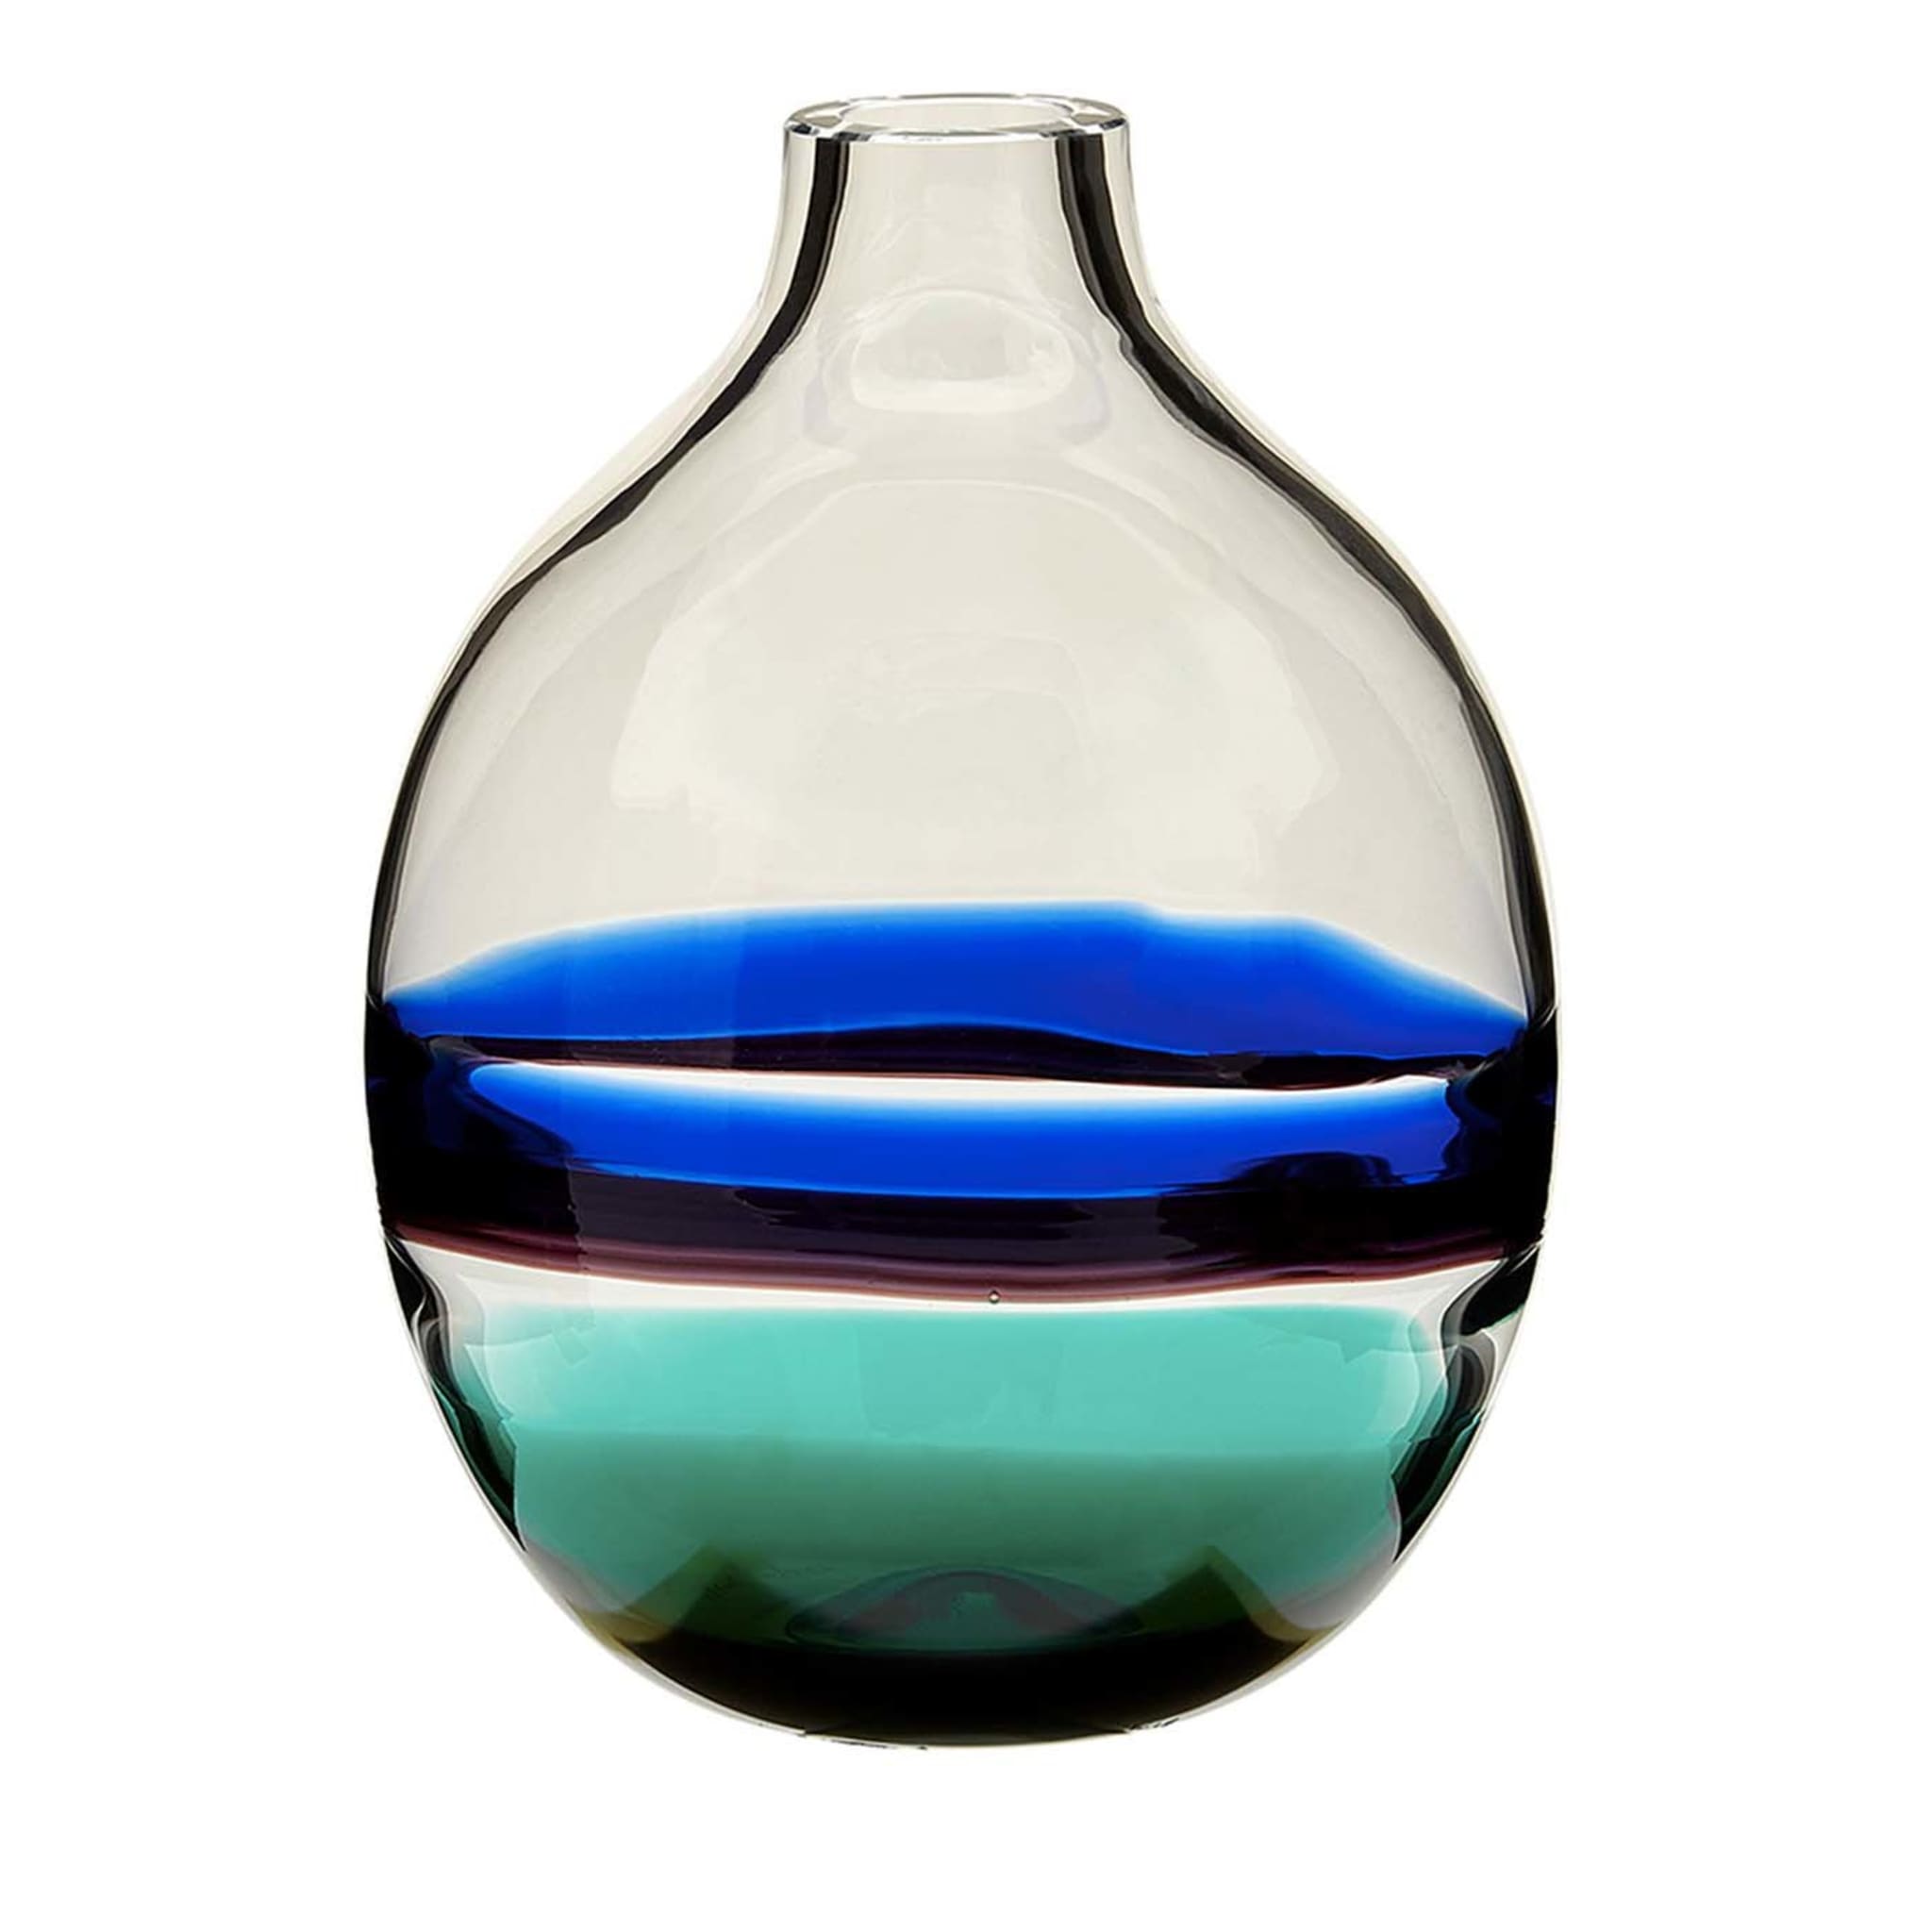 Einblütige Vase Blau/Grün N. 1 - Hauptansicht